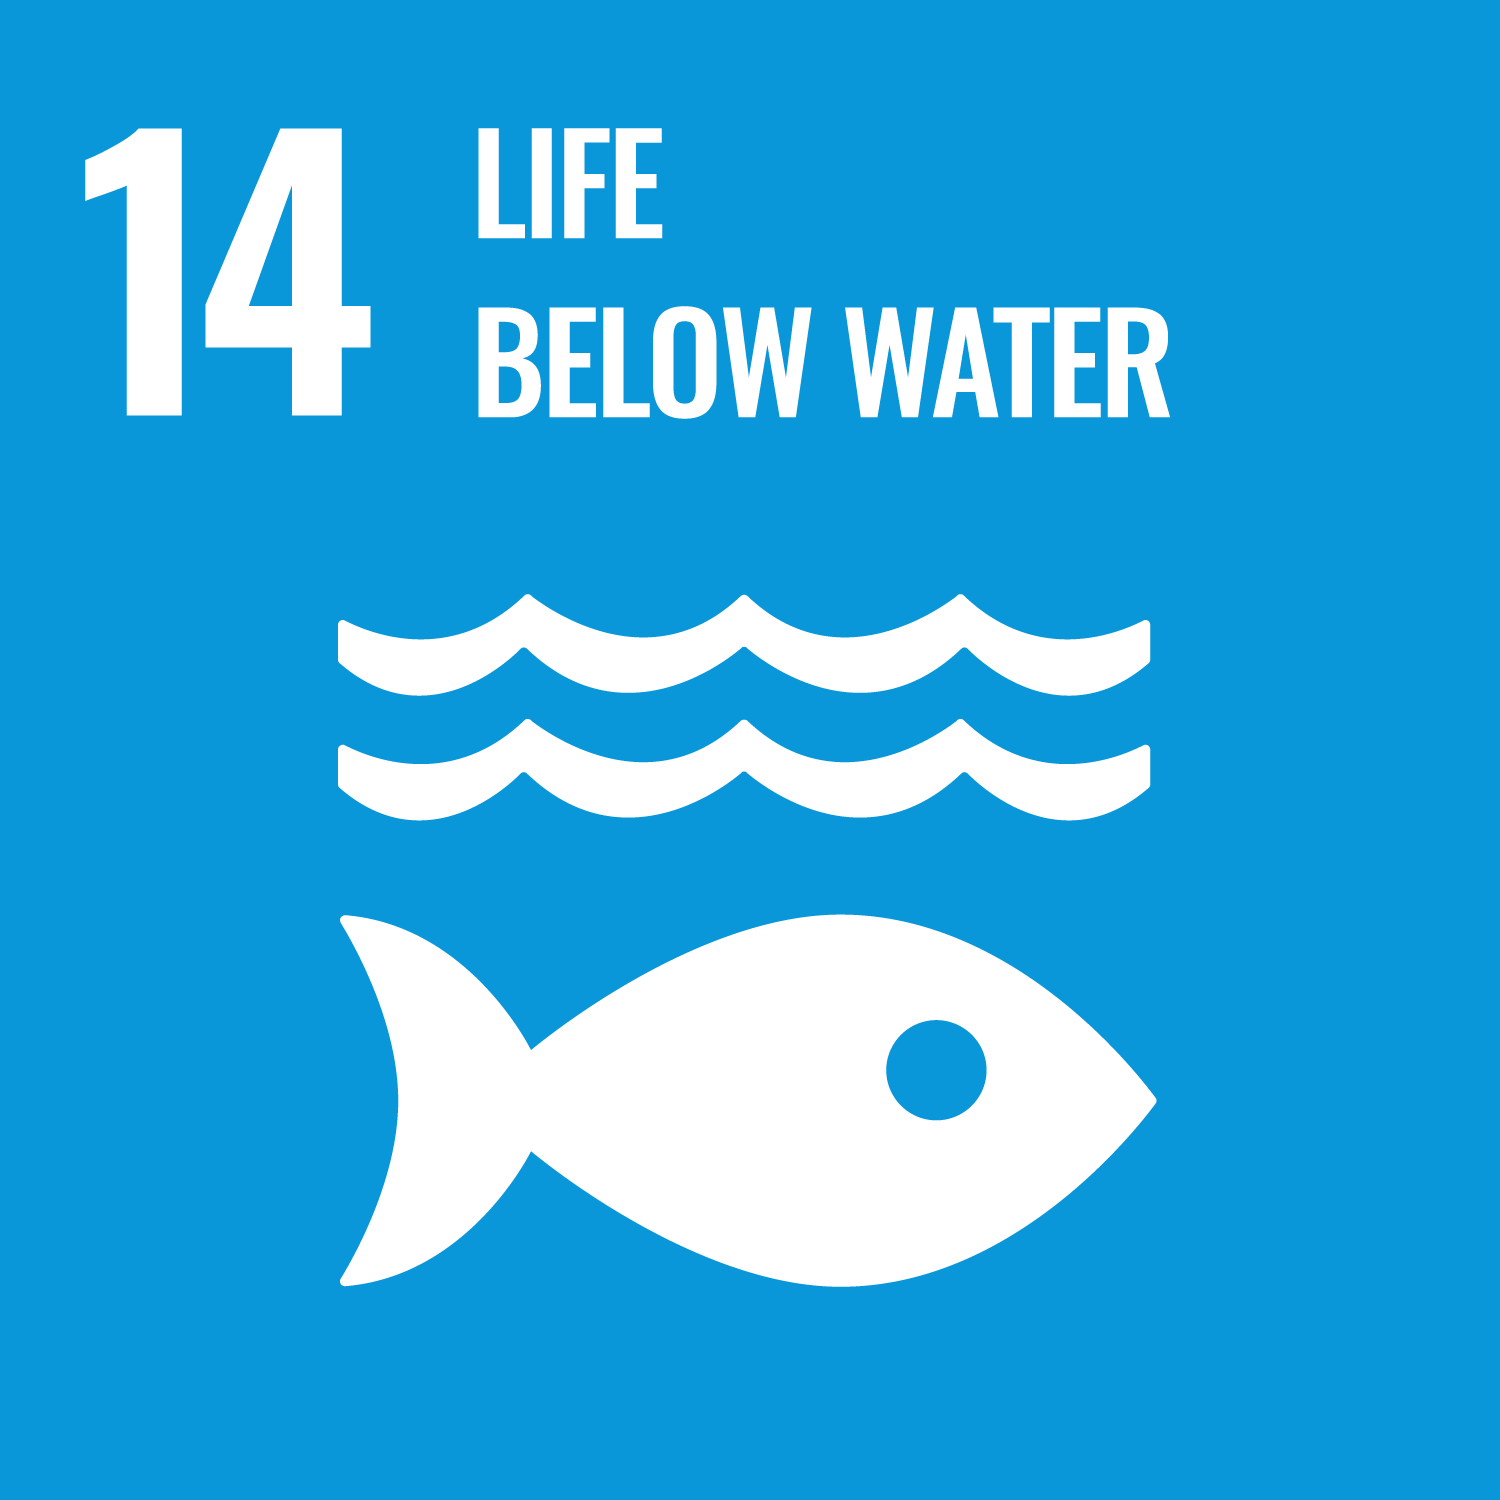 Weiße Schrift auf blauem Hintergrund: 14 Leben unter Wasser, darunter ein Piktogramm eines Fischs unter Wasser